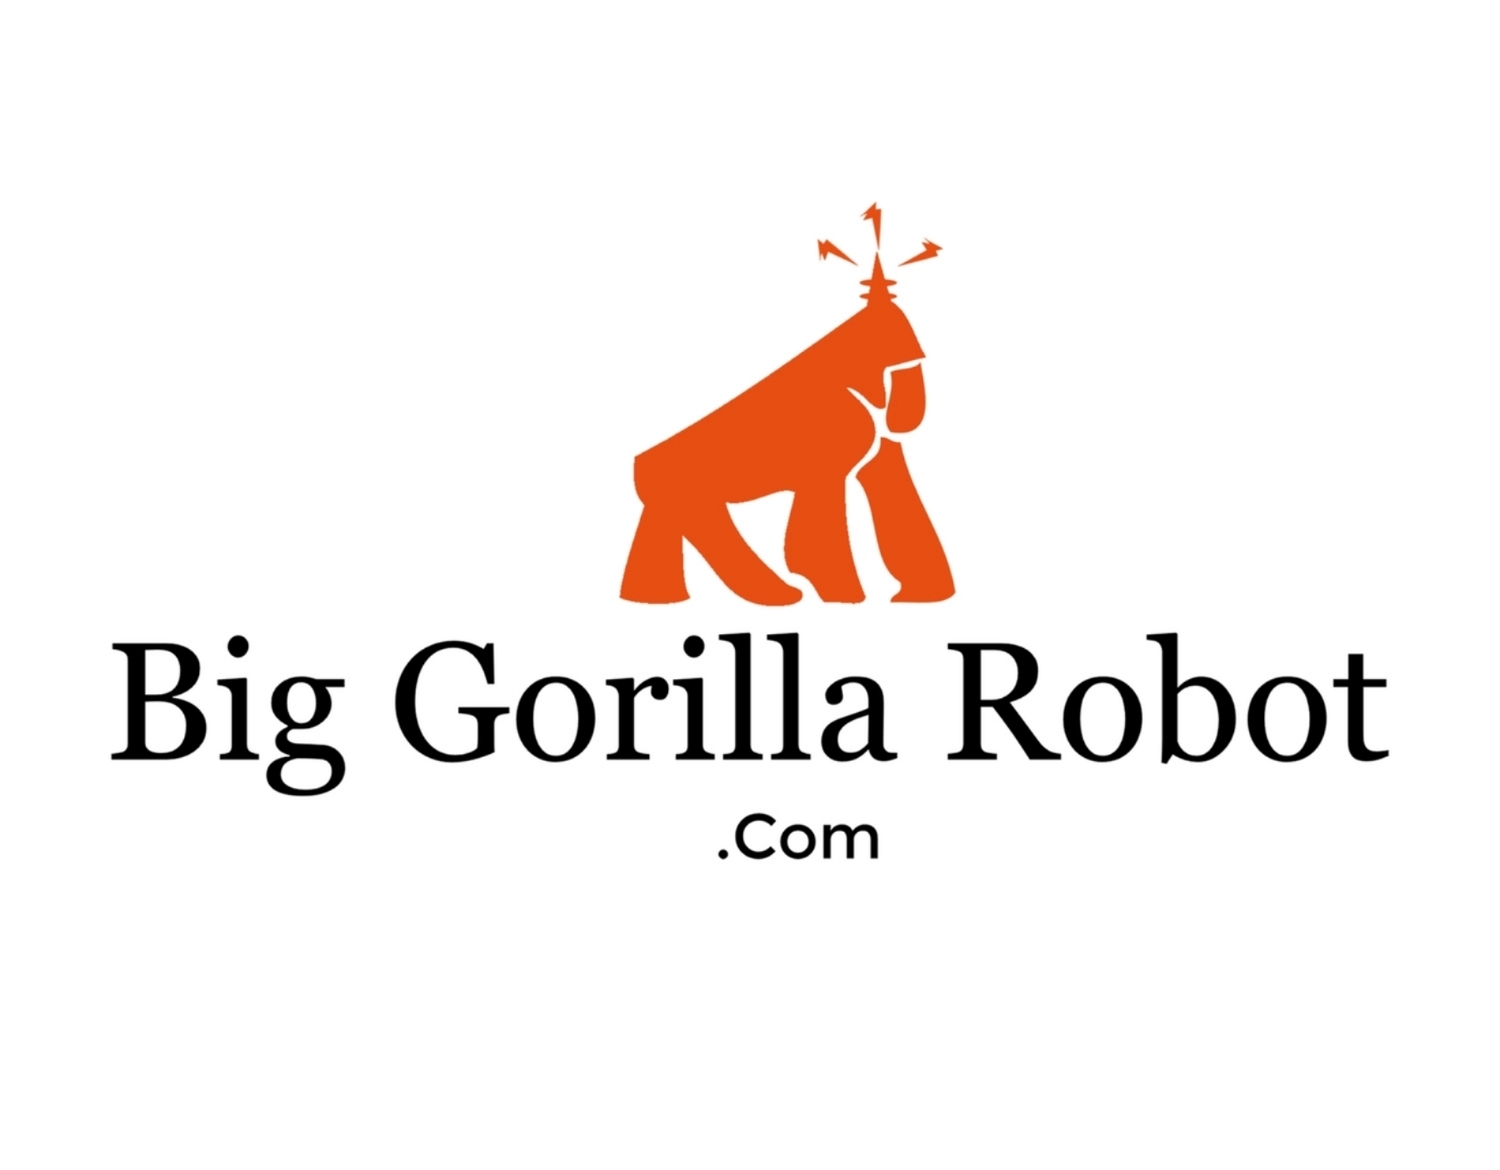 Gorilla Robot